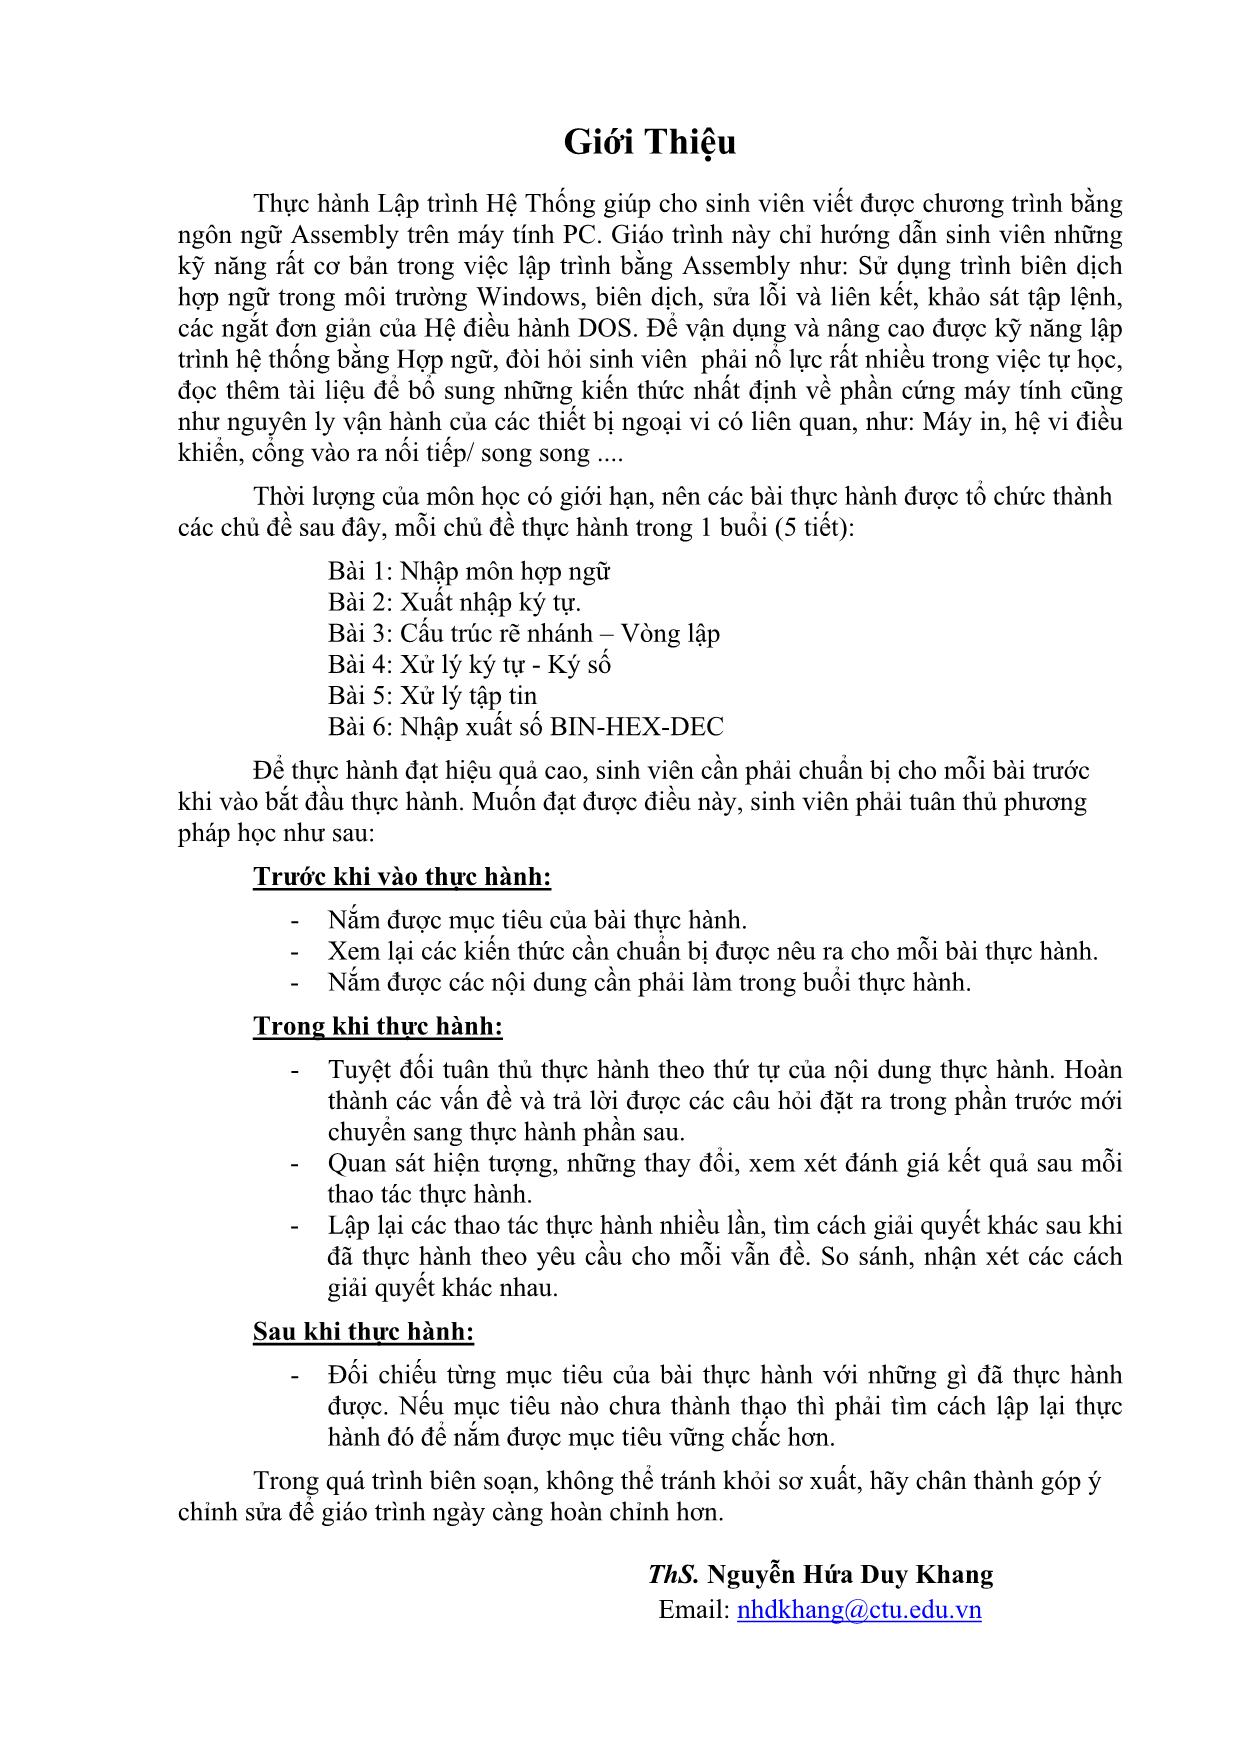 Giáo trình thực hành Lập trình hệ thống trang 4